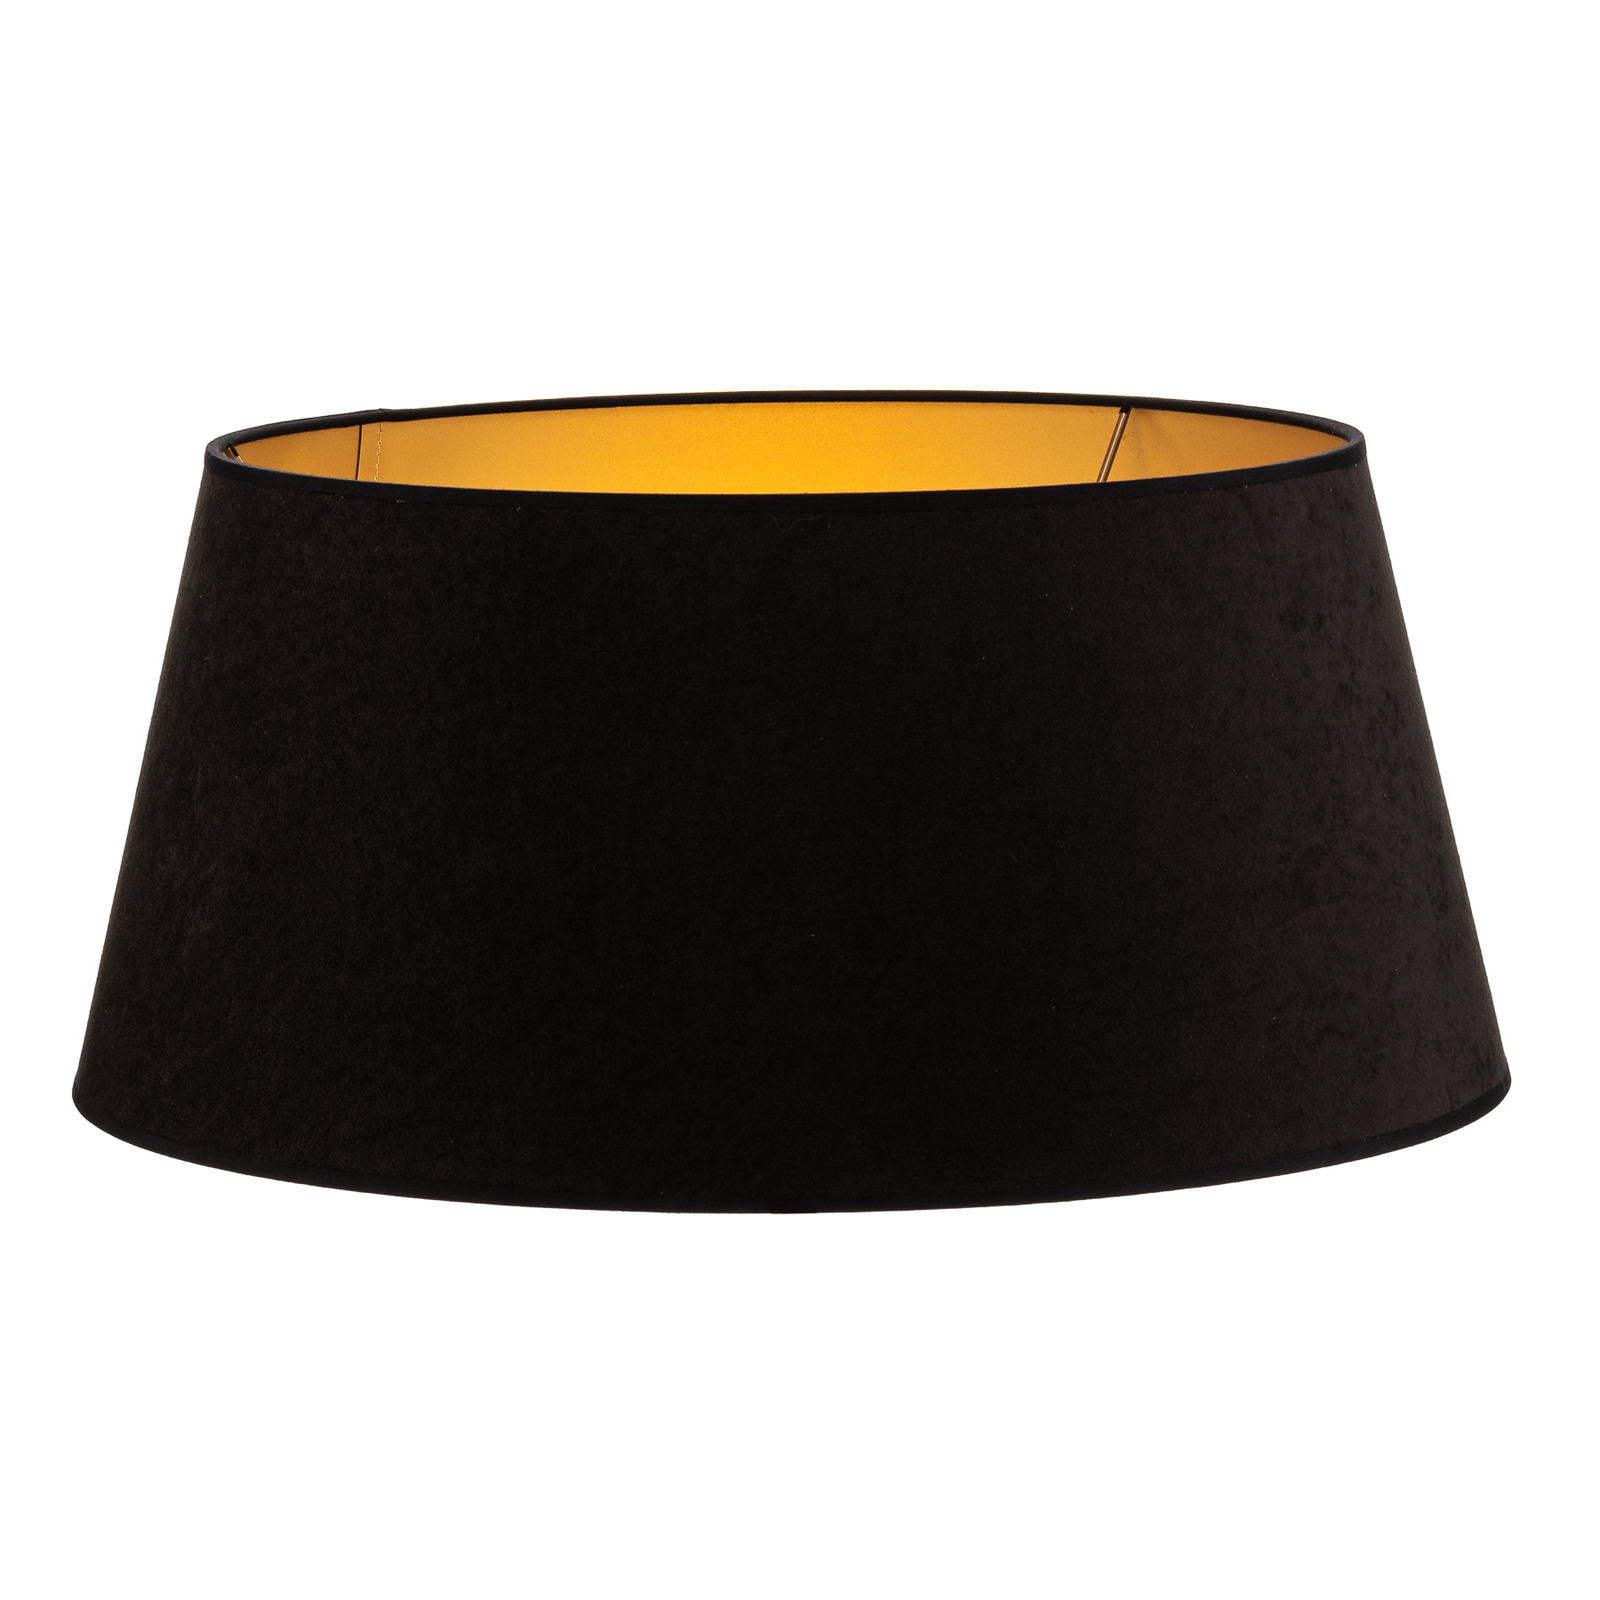 Kúp alakú lámpaernyő, magasság 25,5 cm, fekete/arany